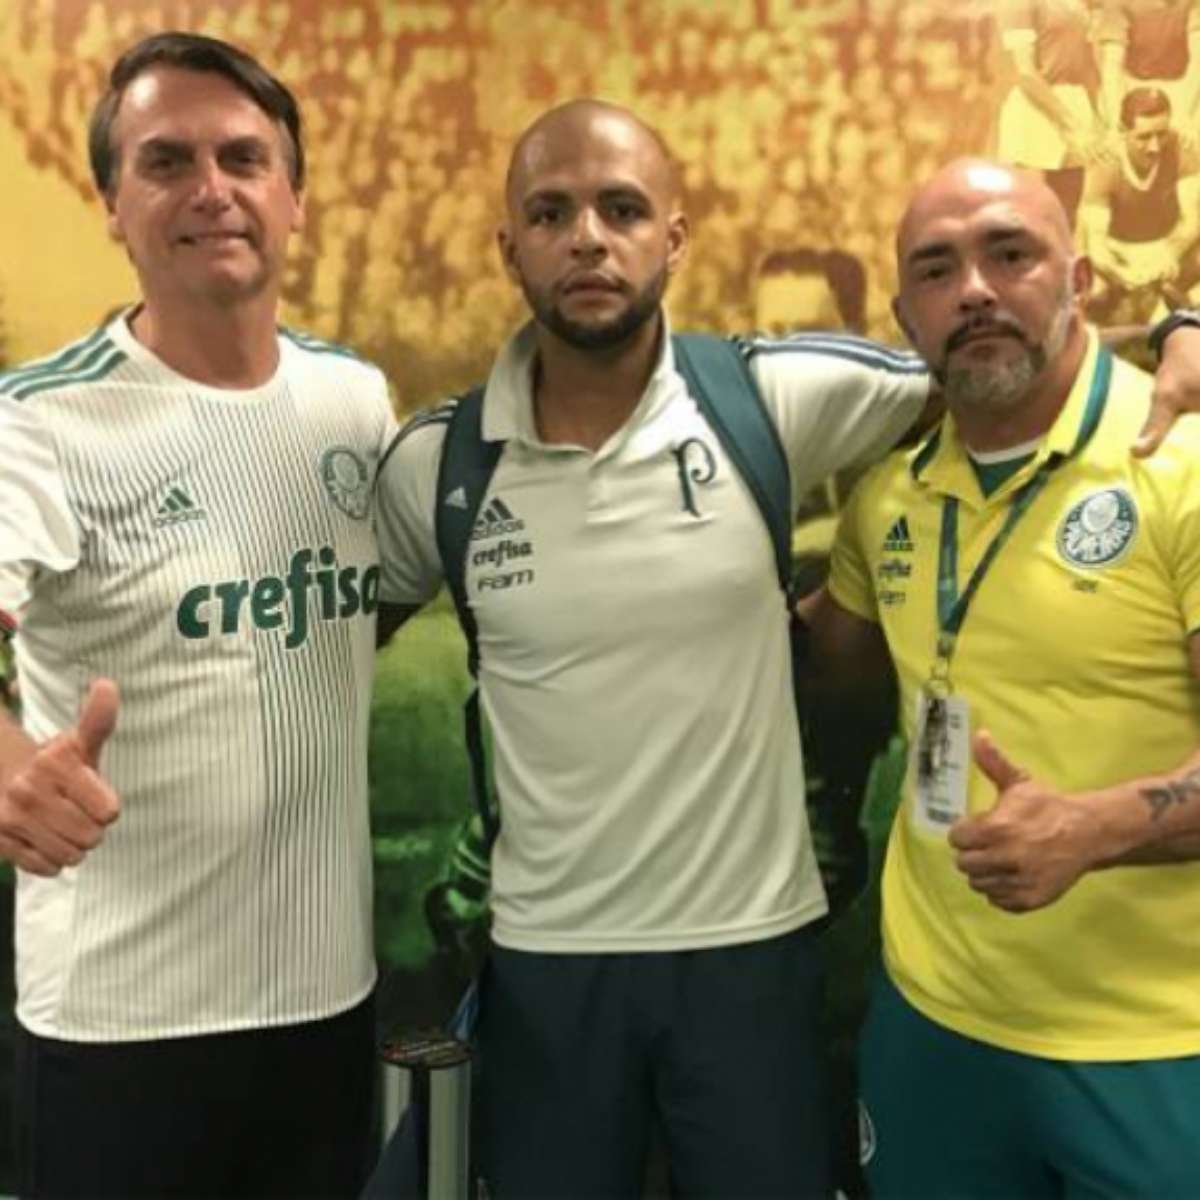 Jogadores da seleção de vôlei causam polêmica com suposto apoio a Bolsonaro